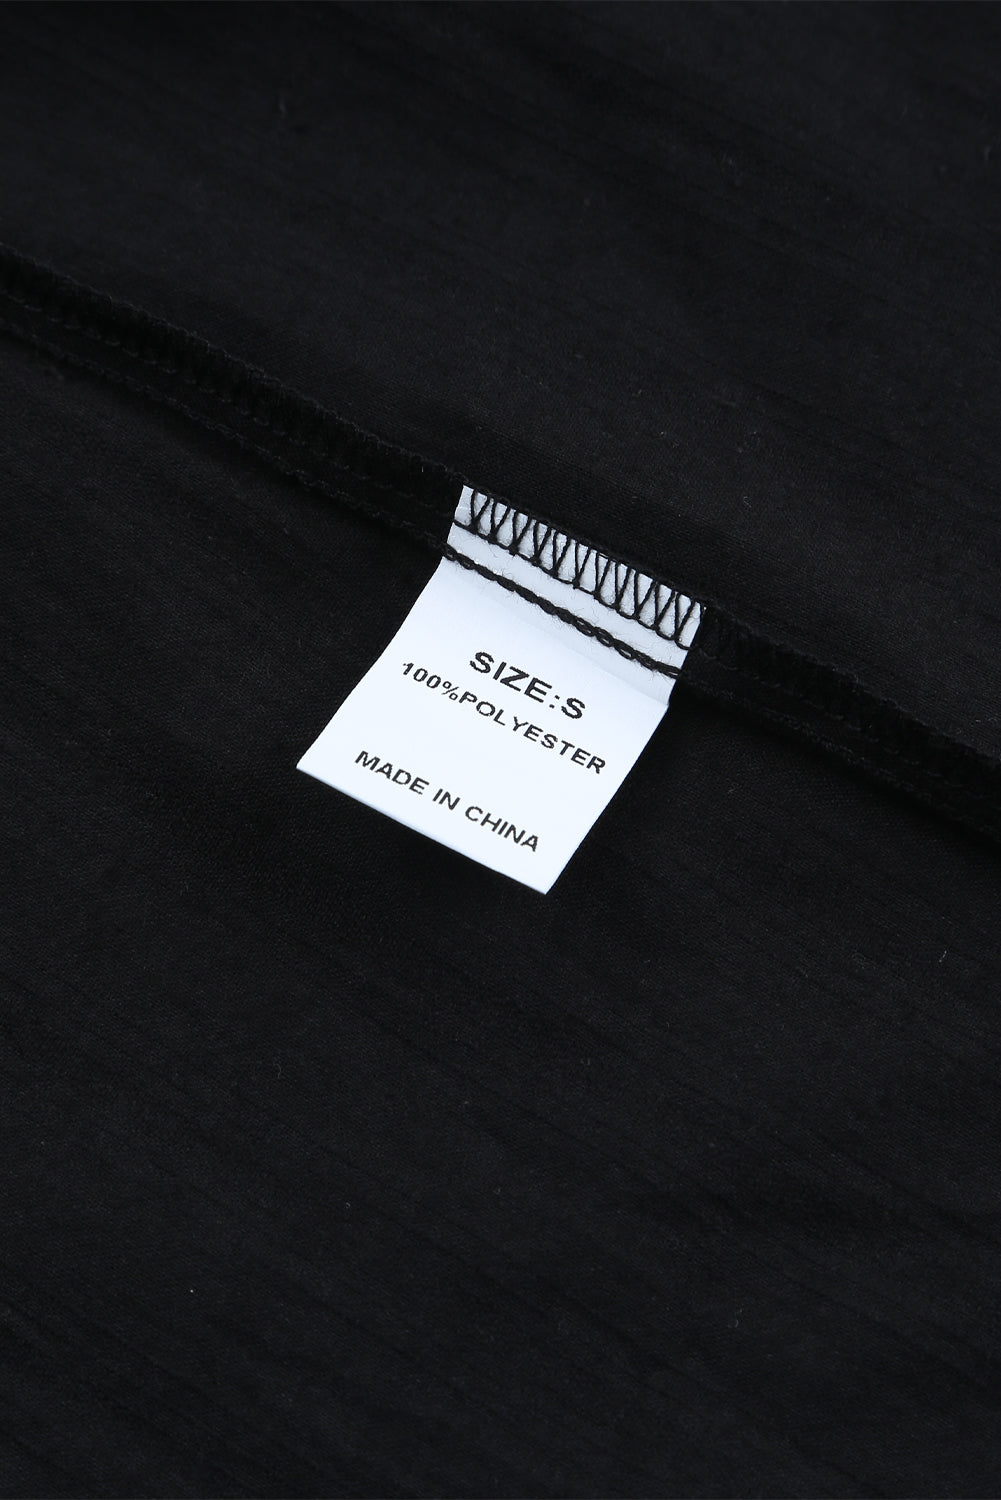 Chemise à manches longues texturée noire avec poche boutonnée